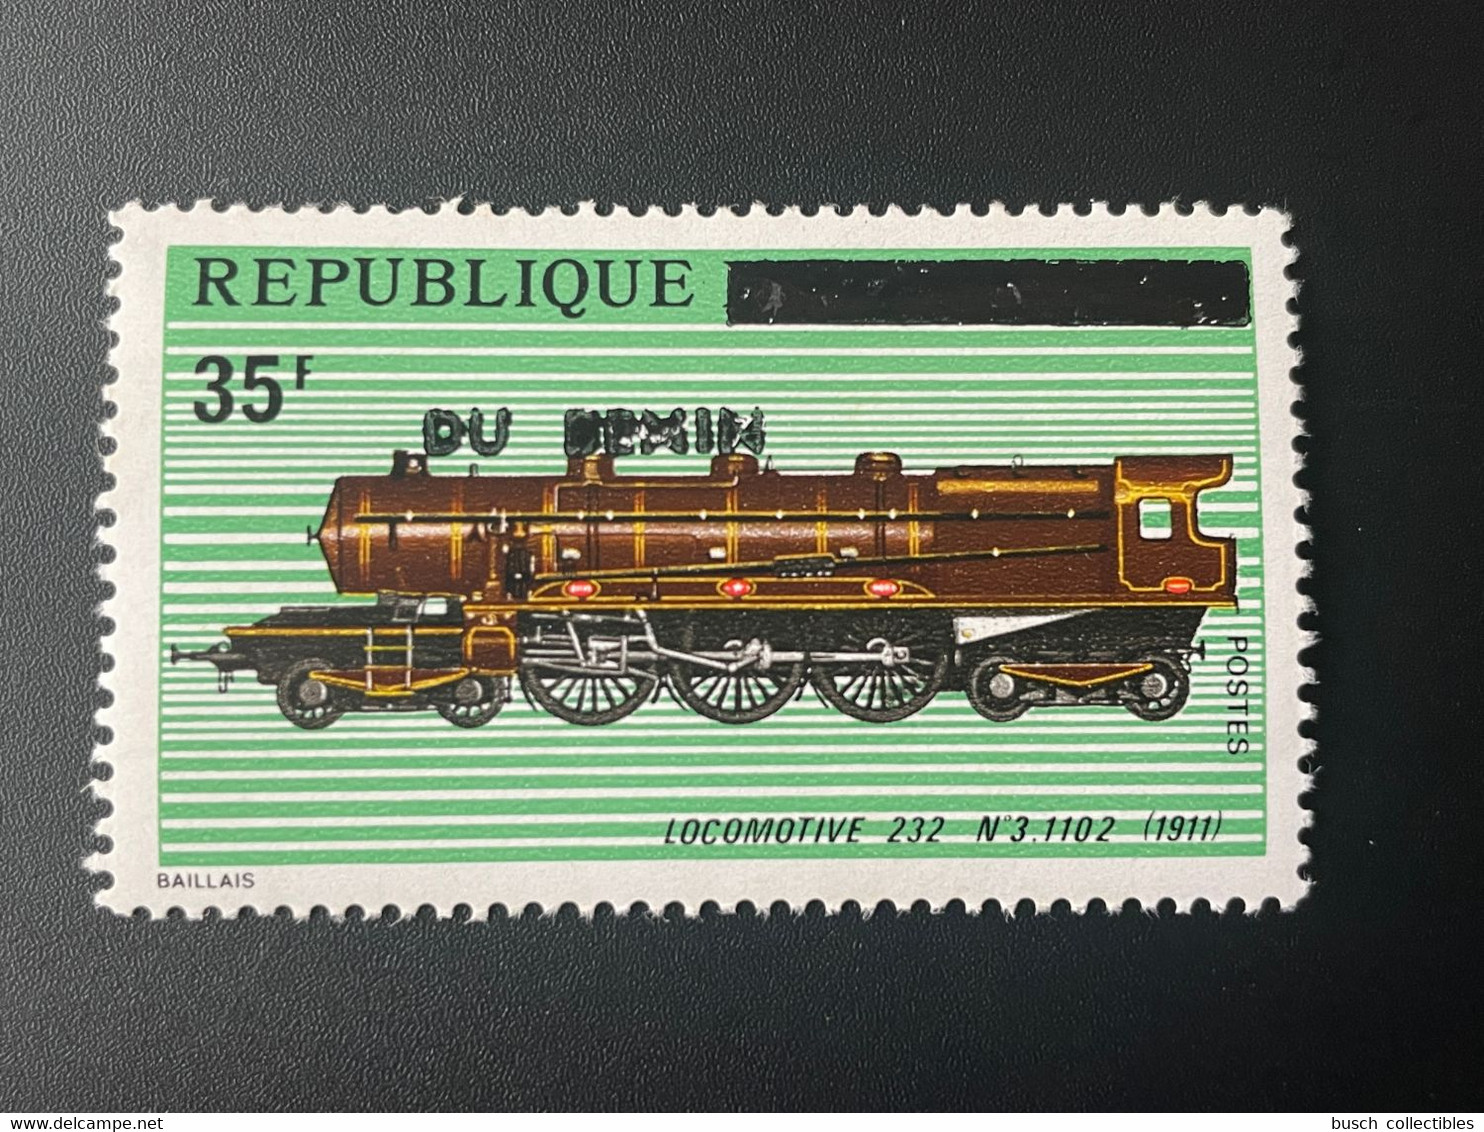 Benin 1992 Mi. 524 Surchargé Overprint Locomotive 232 N°3.1102 1911 Lokomotive Train Railways Eisenbahn Zug - Bénin – Dahomey (1960-...)